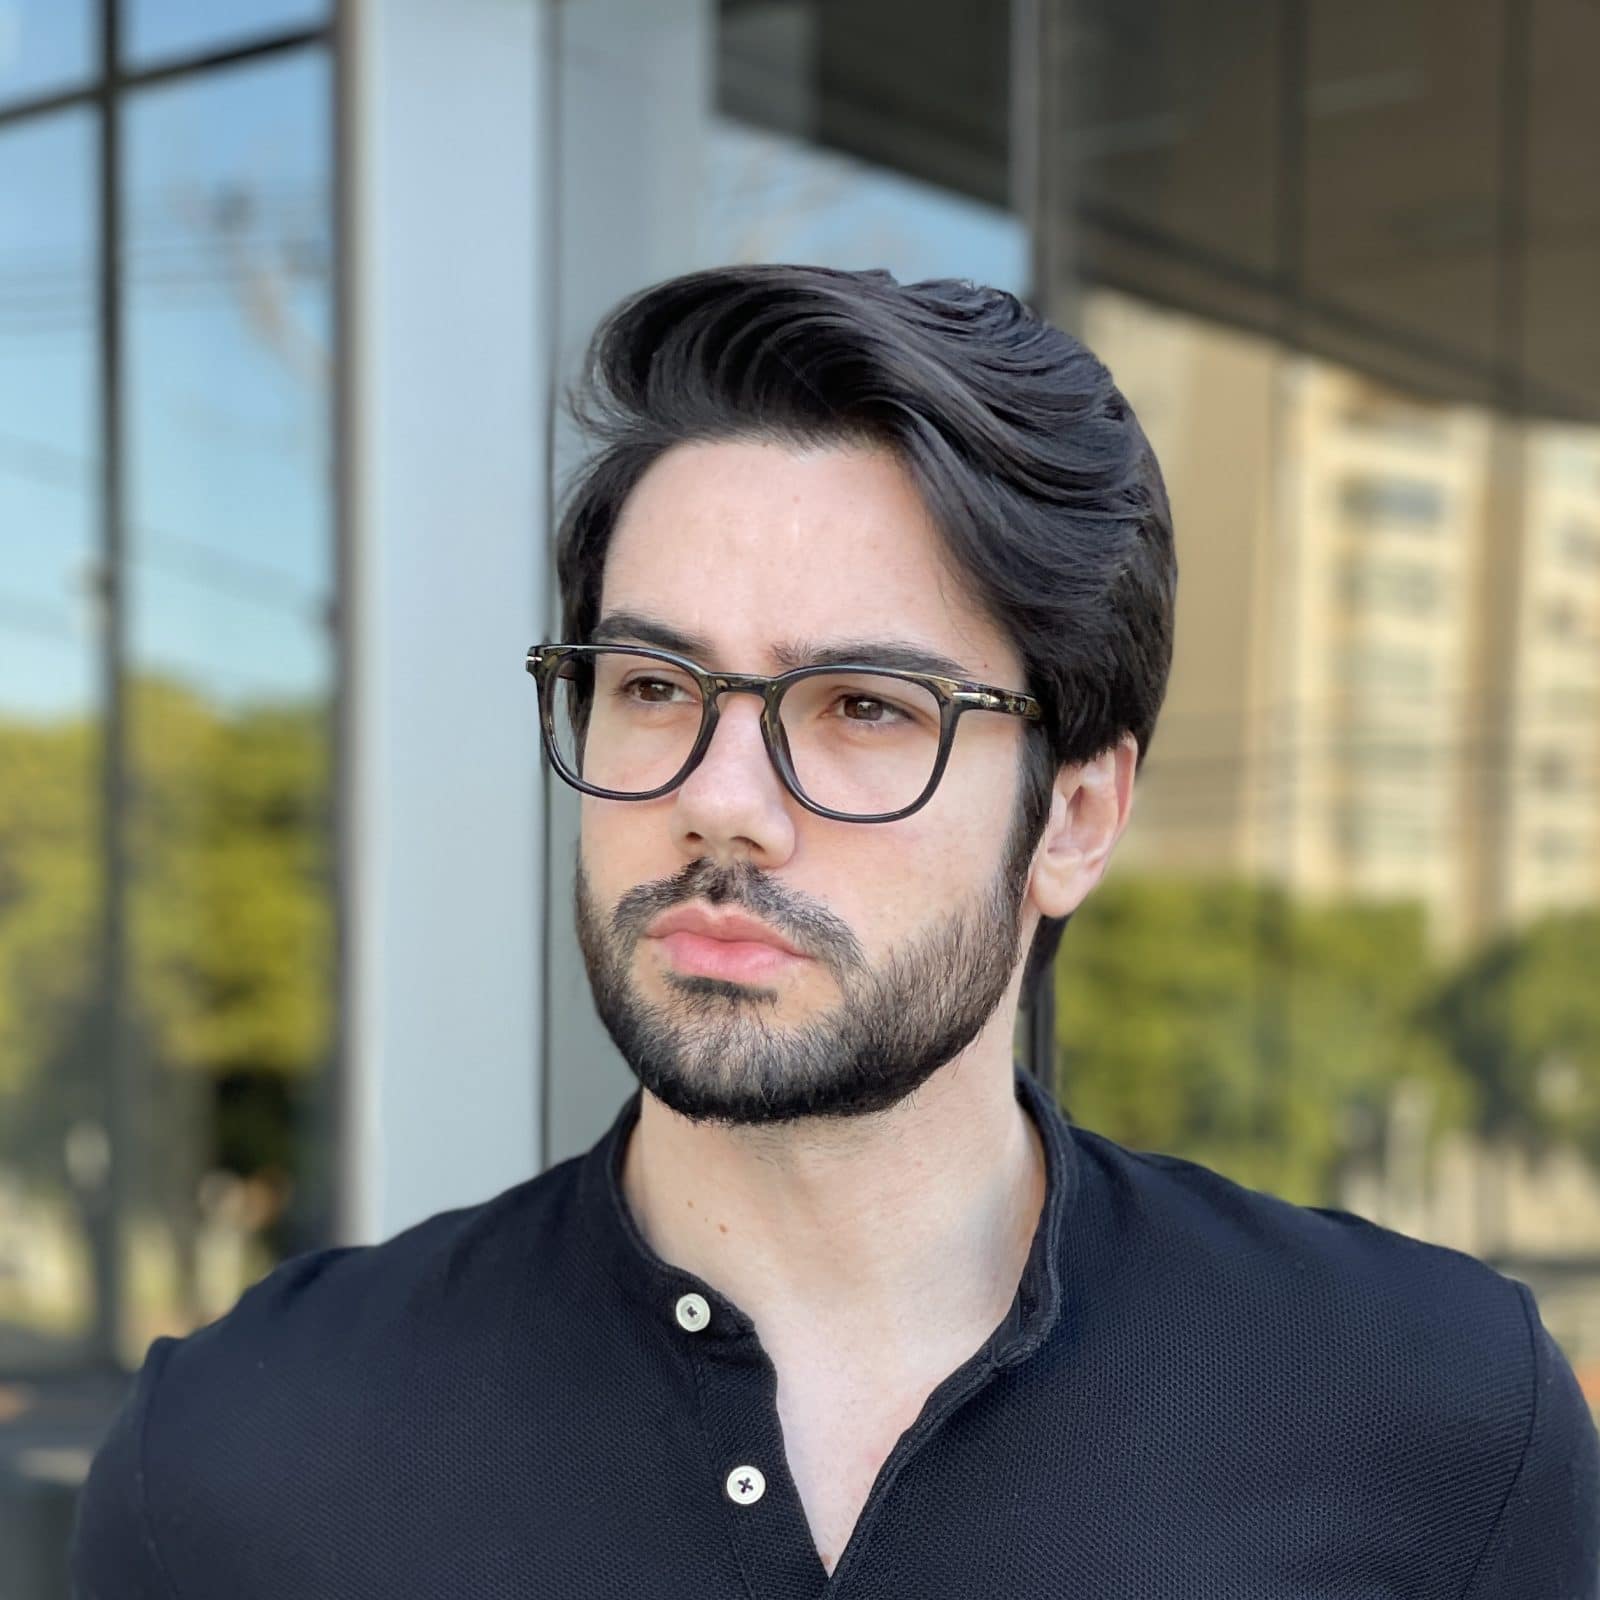 Óculos de Grau Masculino Quadrado Preto Cauã - Safine